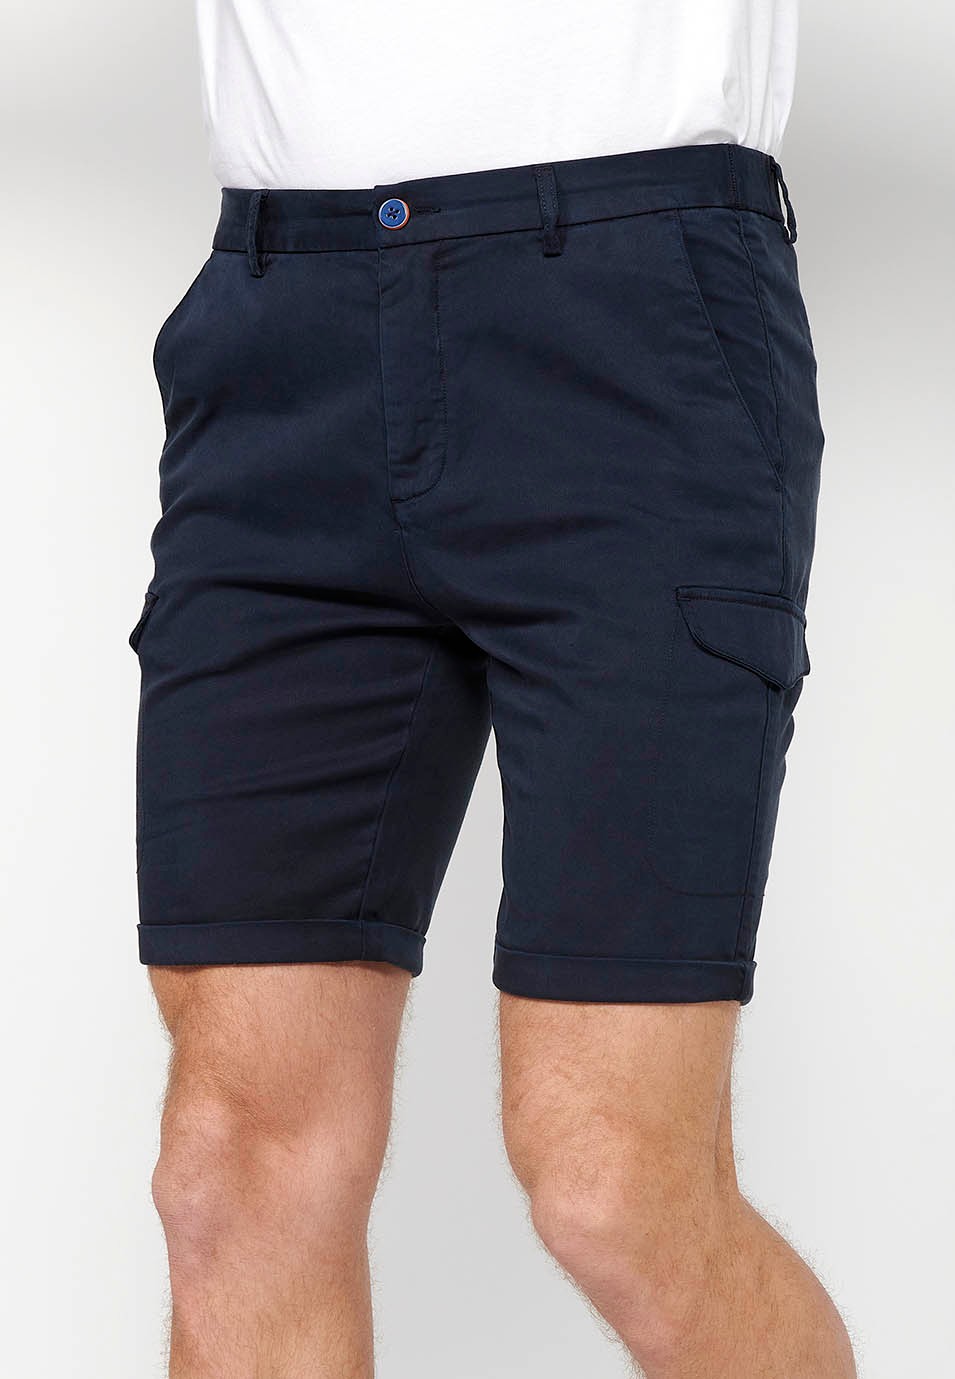 Pantalón corto con Cintura engomada y cierre con cremallera y botón con Bolsillos, dos laterales con solapa de Color Navy para Hombre